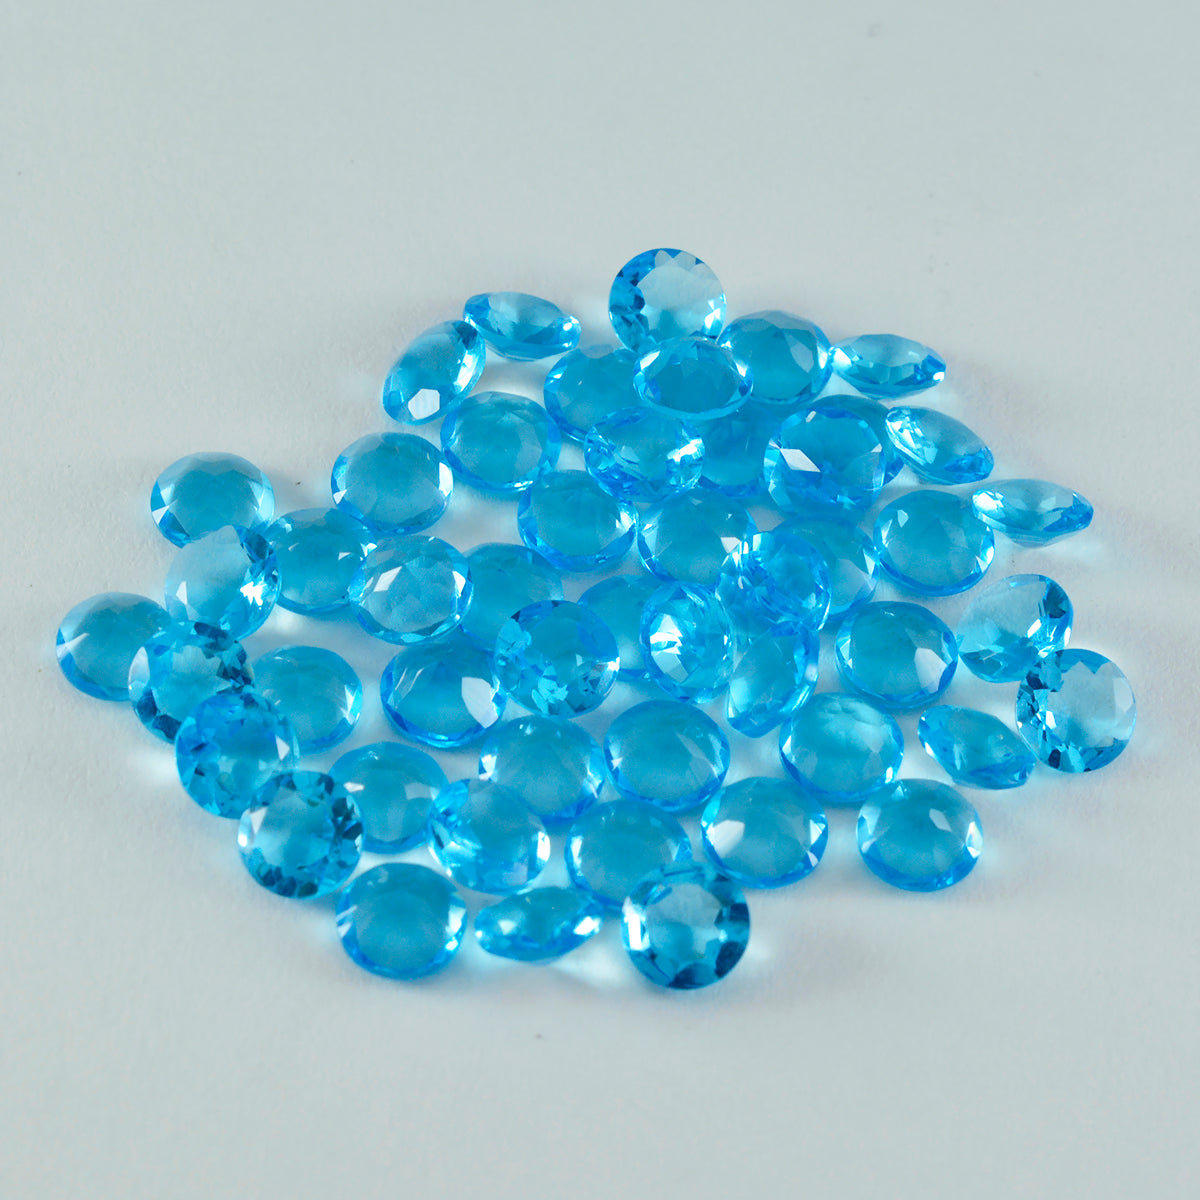 Riyogems 1 pieza topacio azul CZ facetado 5x5 mm forma redonda impresionante calidad gema suelta